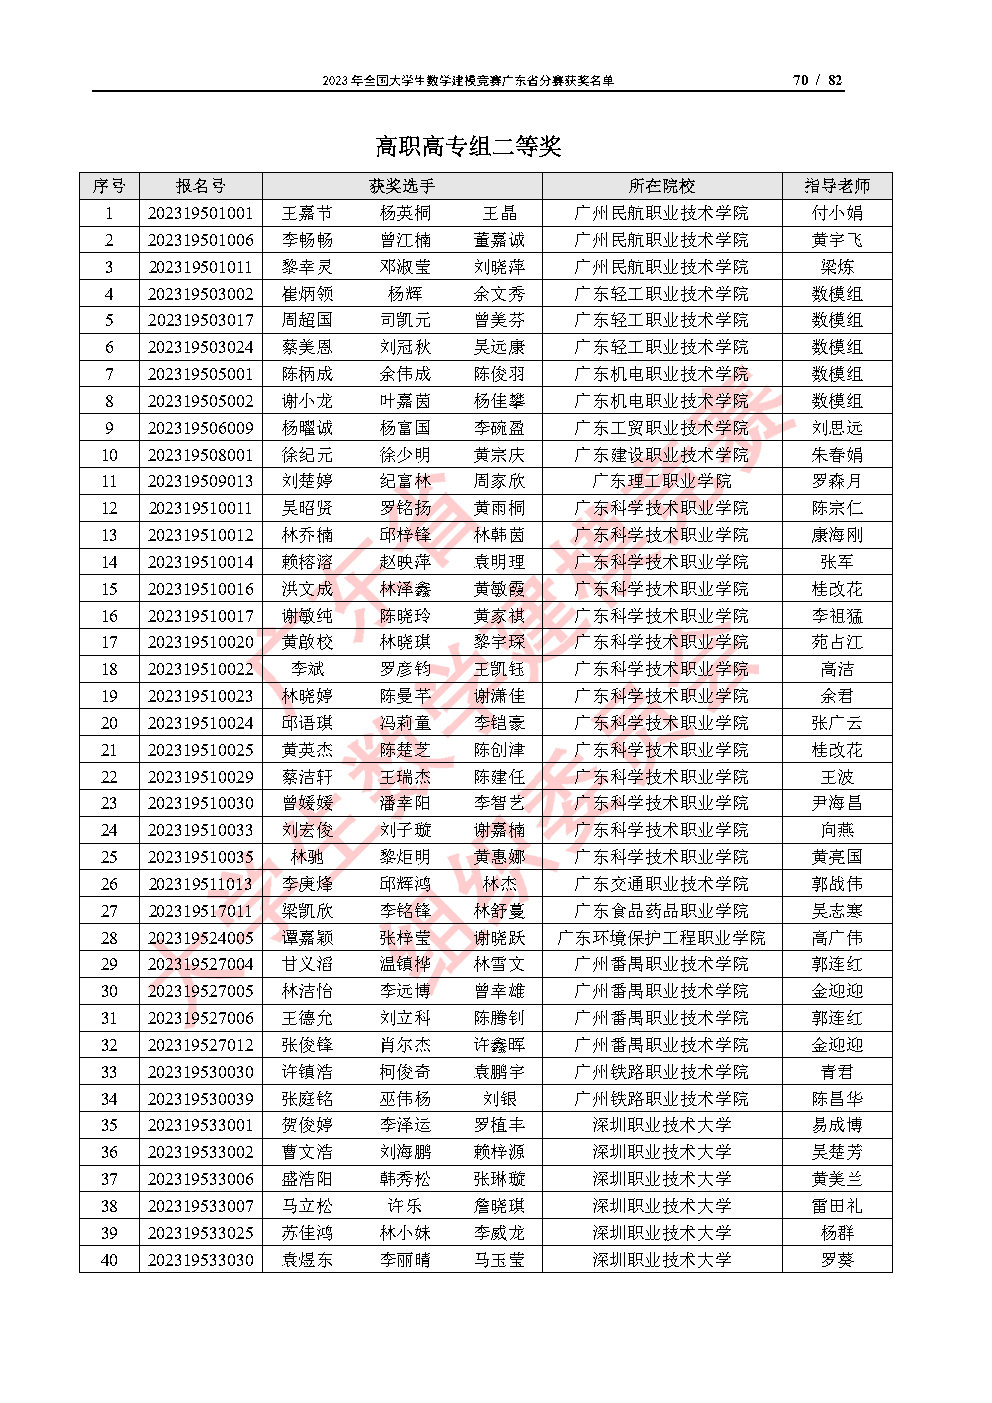 2023年全国大学生数学建模竞赛广东省分赛获奖名单_Page70.jpg